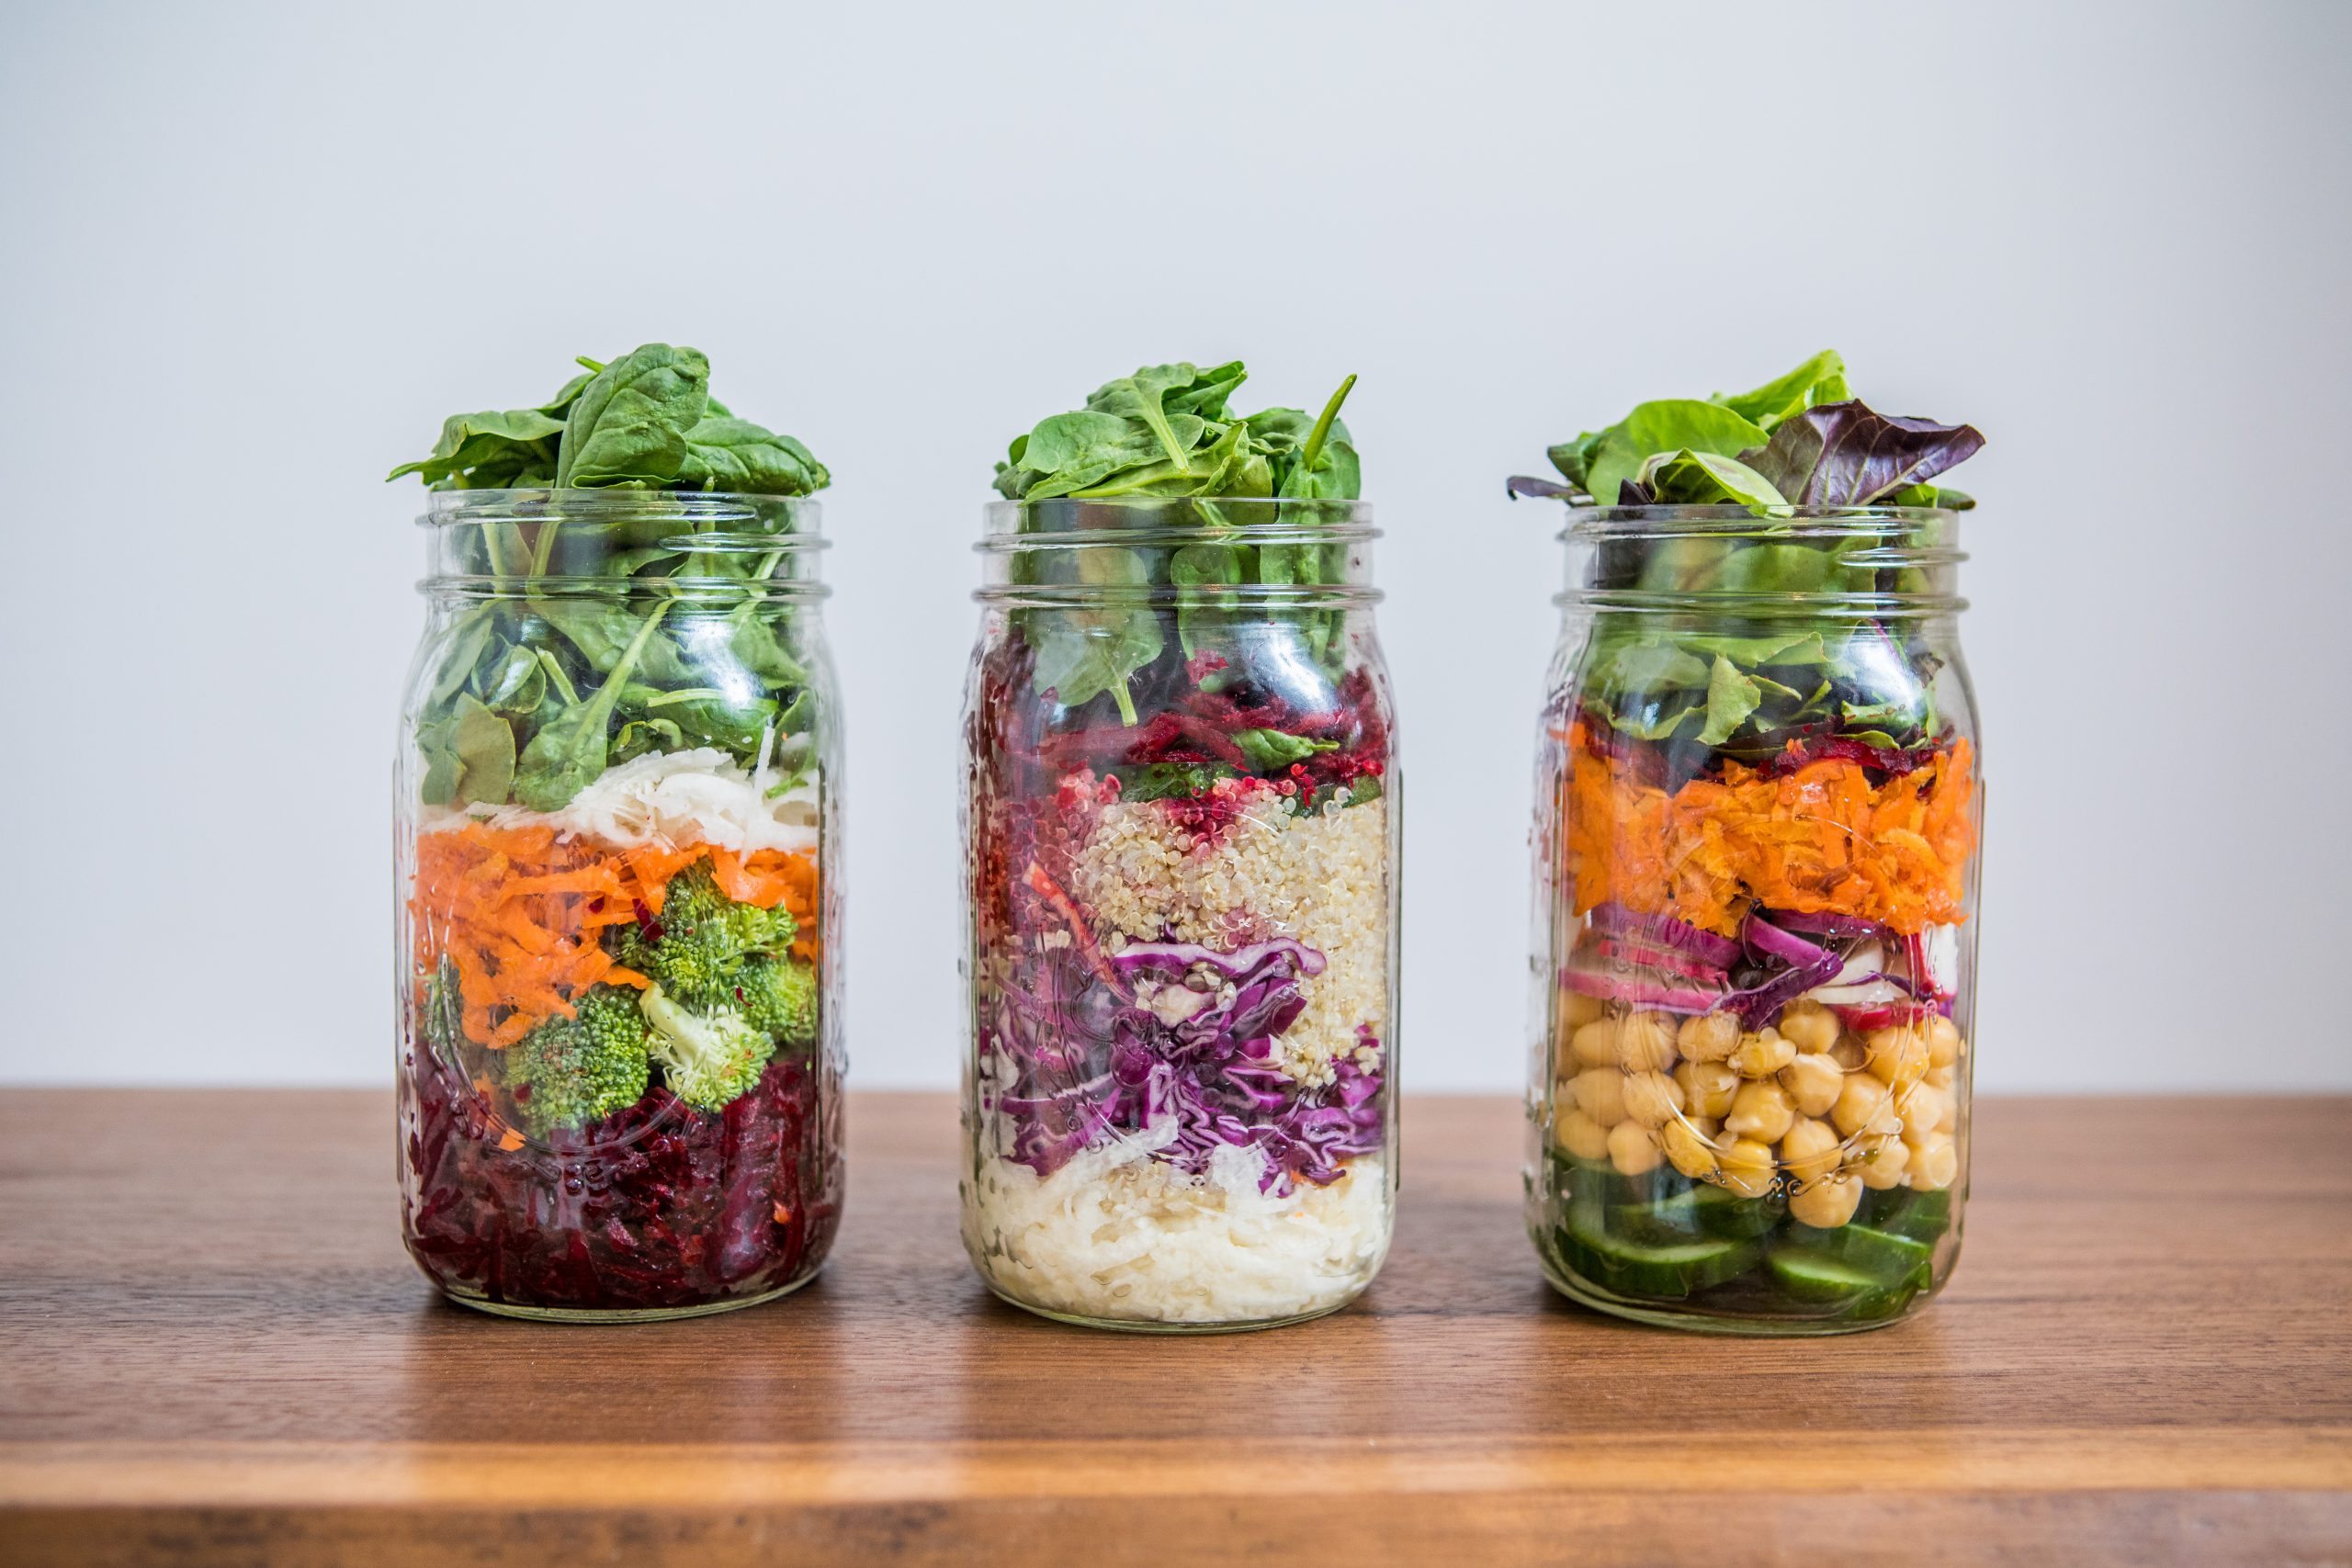 Meal Prep: DIY Salad Bar